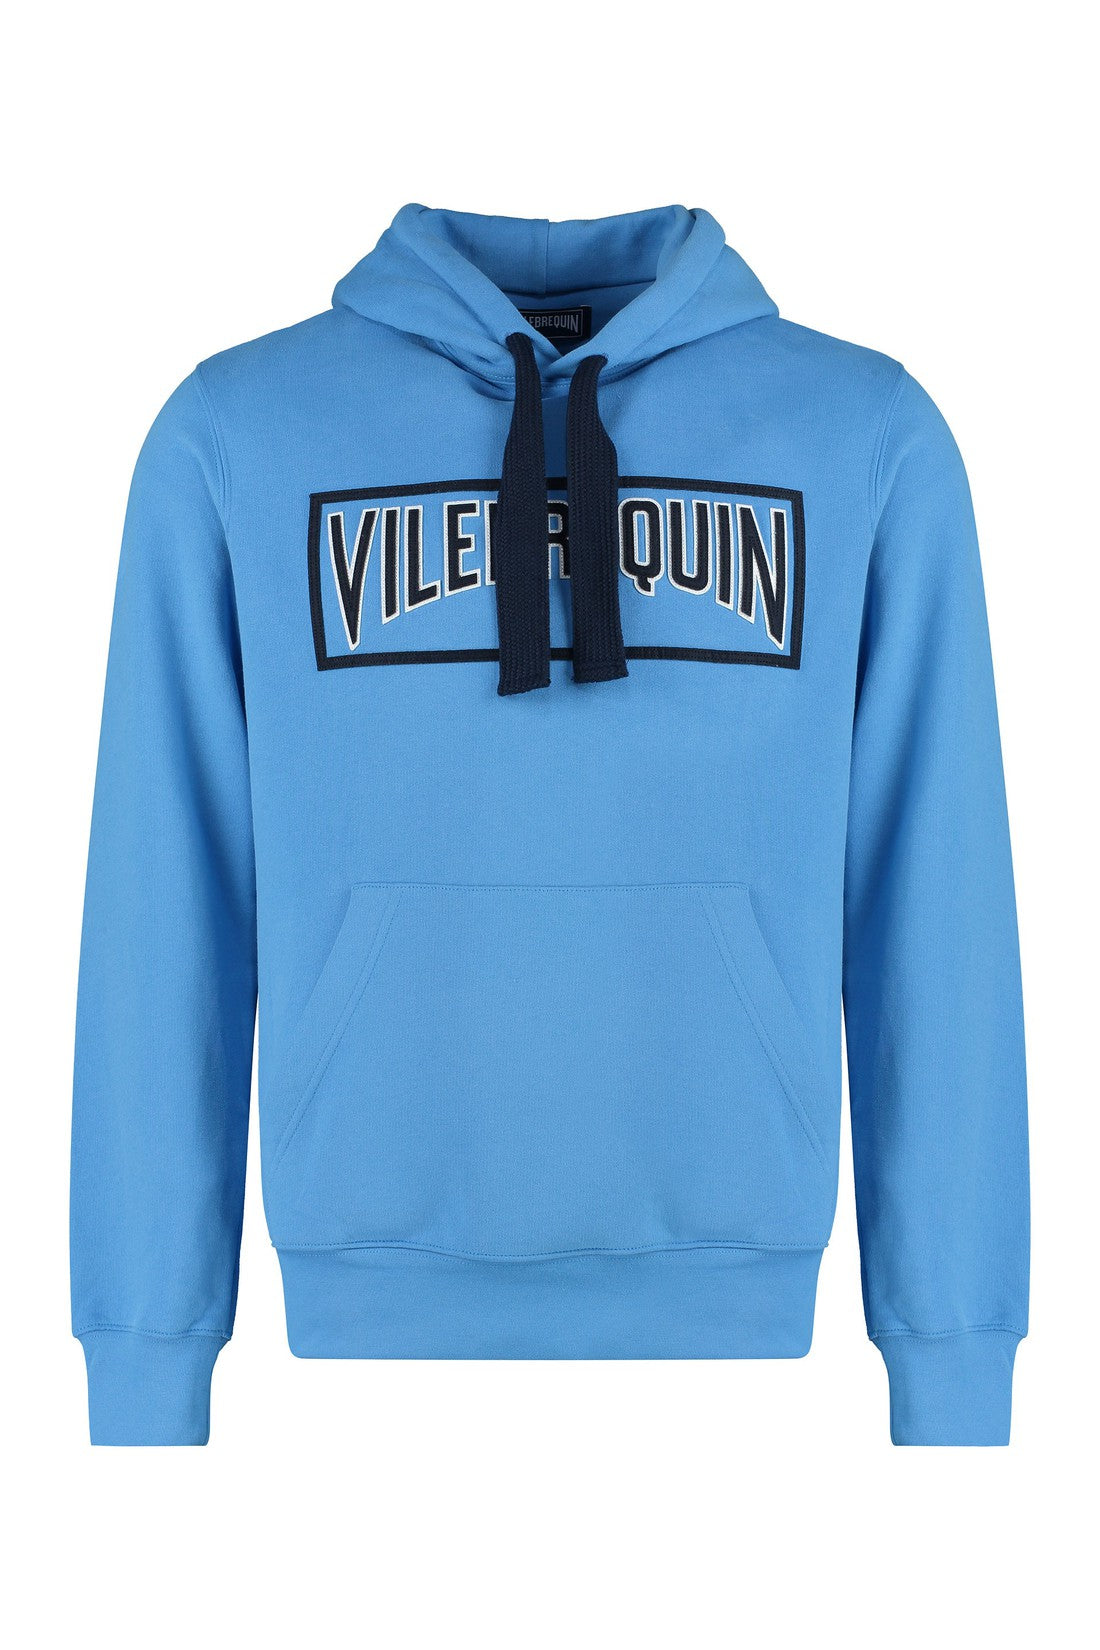 Vilebrequin-OUTLET-SALE-Cotton hoodie-ARCHIVIST